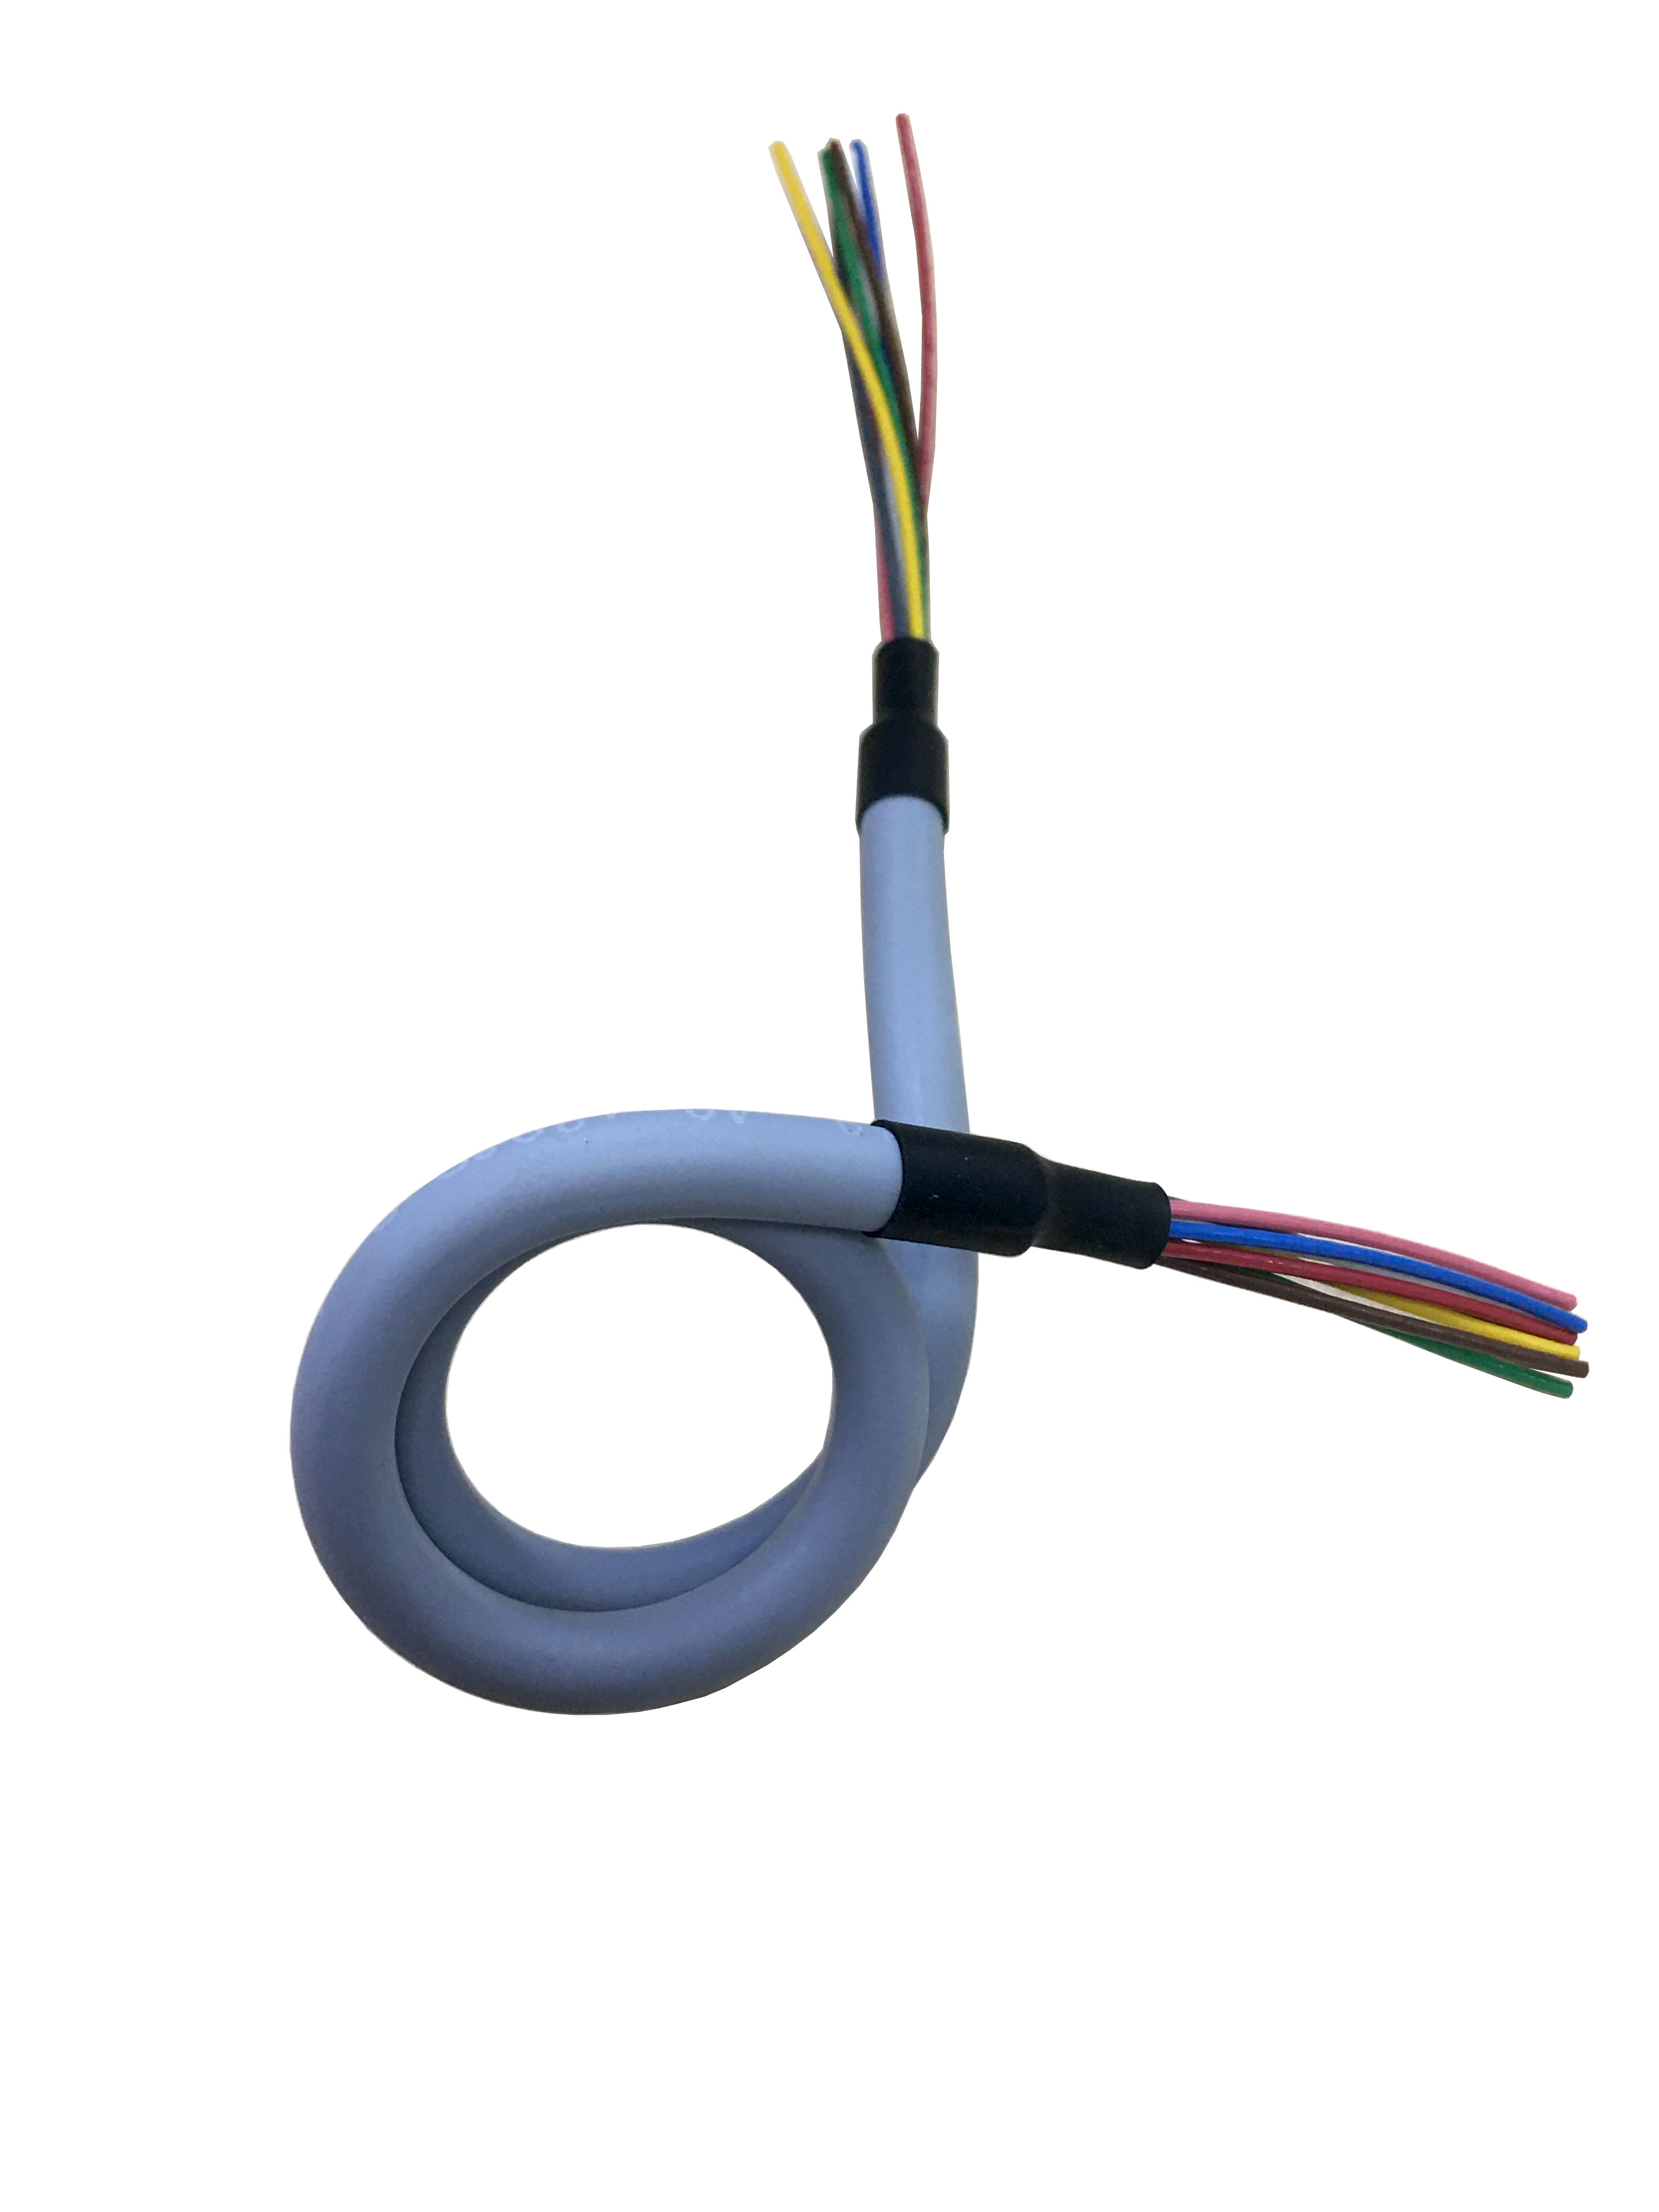 Kabel TPU Kabel volume untuk sepeda bersama Kabel Coil PUR